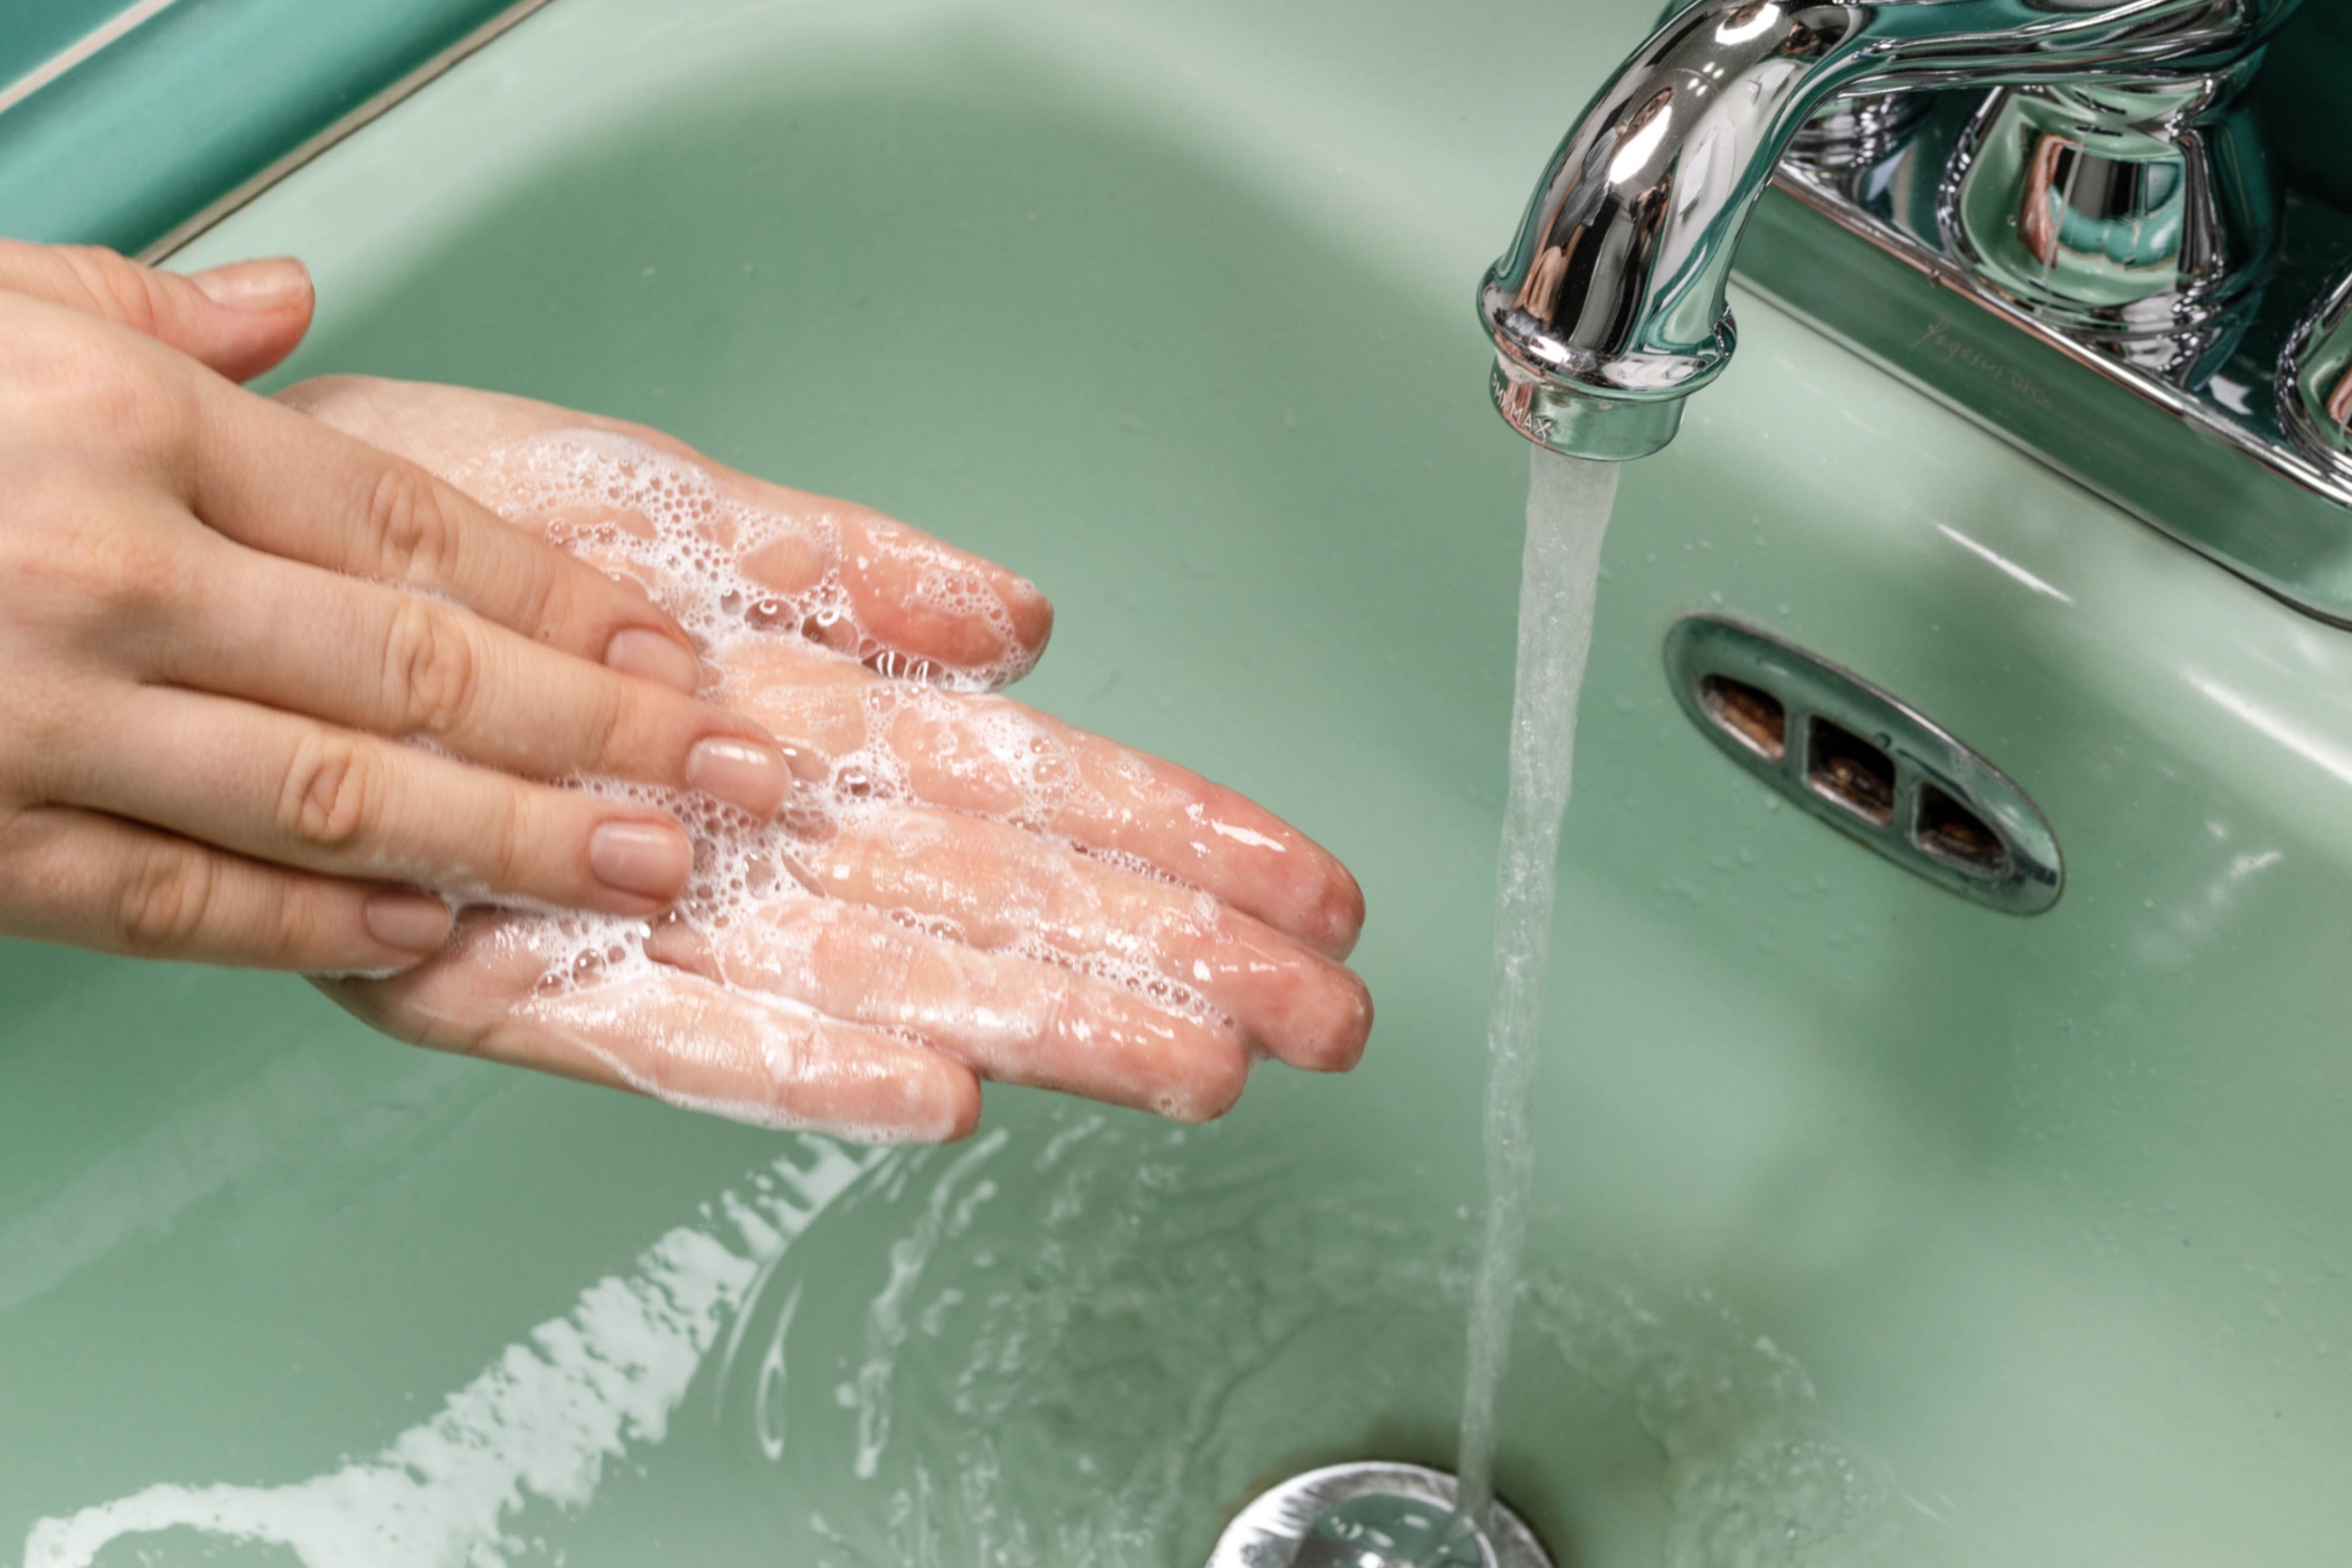 Pravilno umivanje rok - te tri stvari so še posebej pomembne